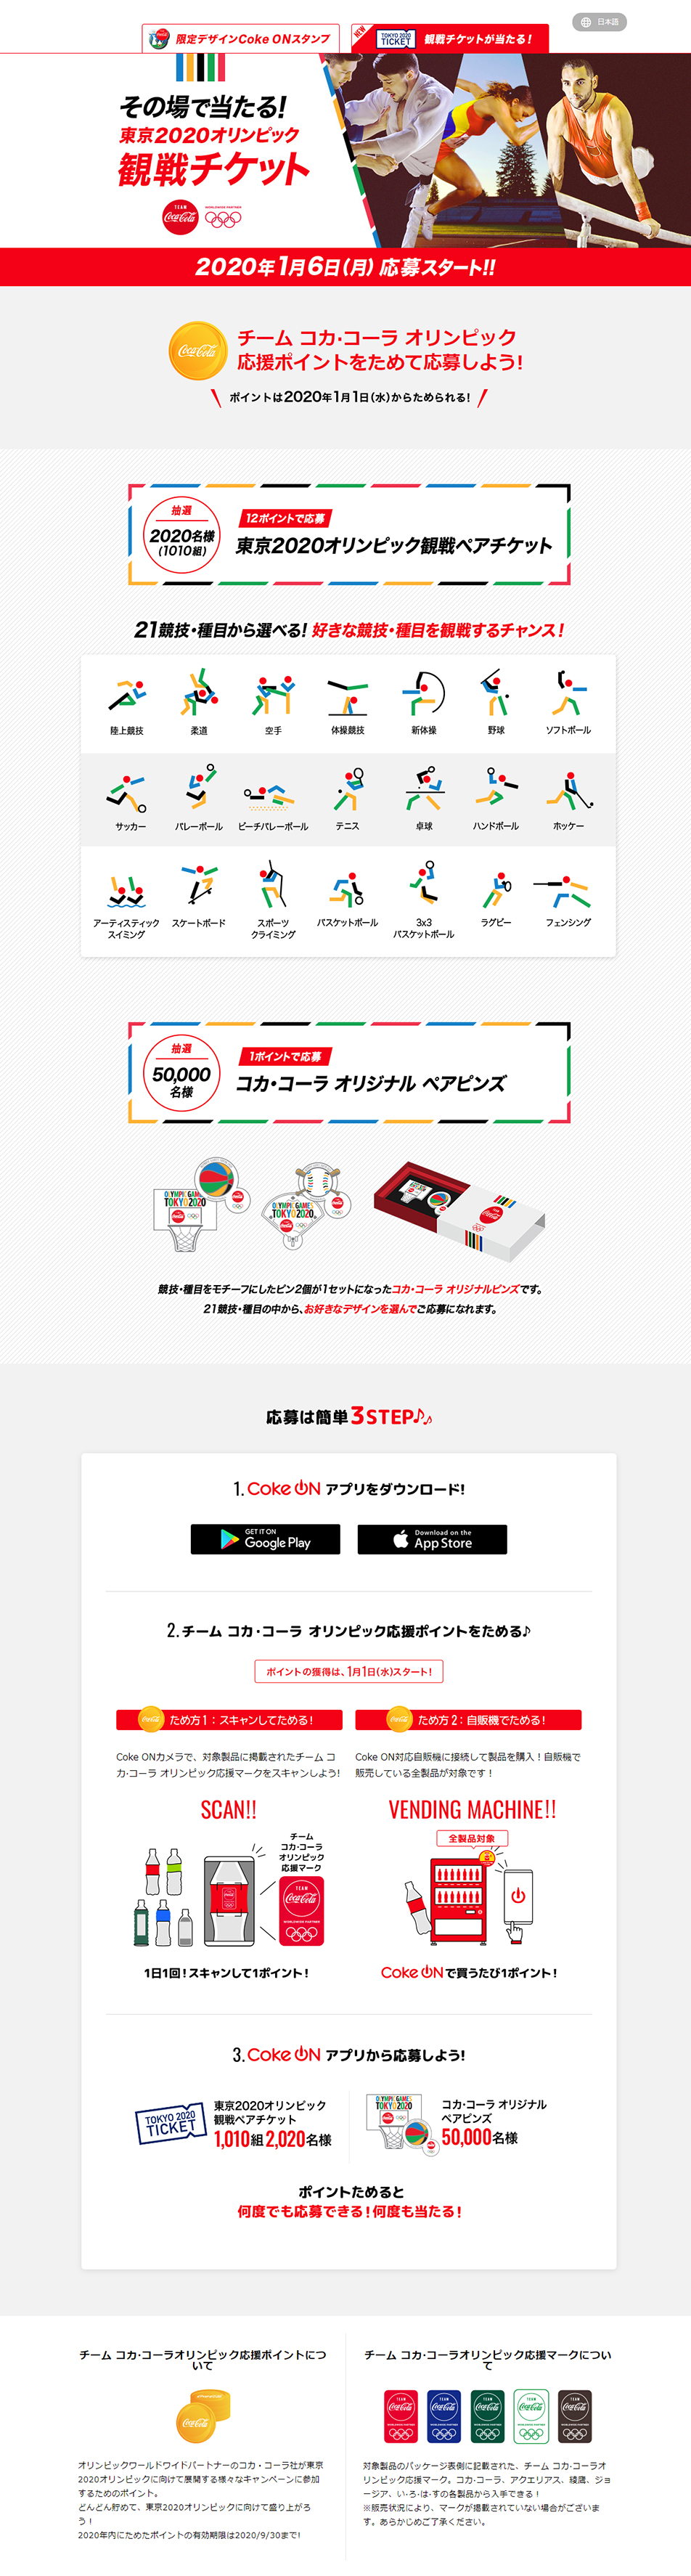 コカ・コーラ 東京2020オリンピック応援キャンペーン_pc_1